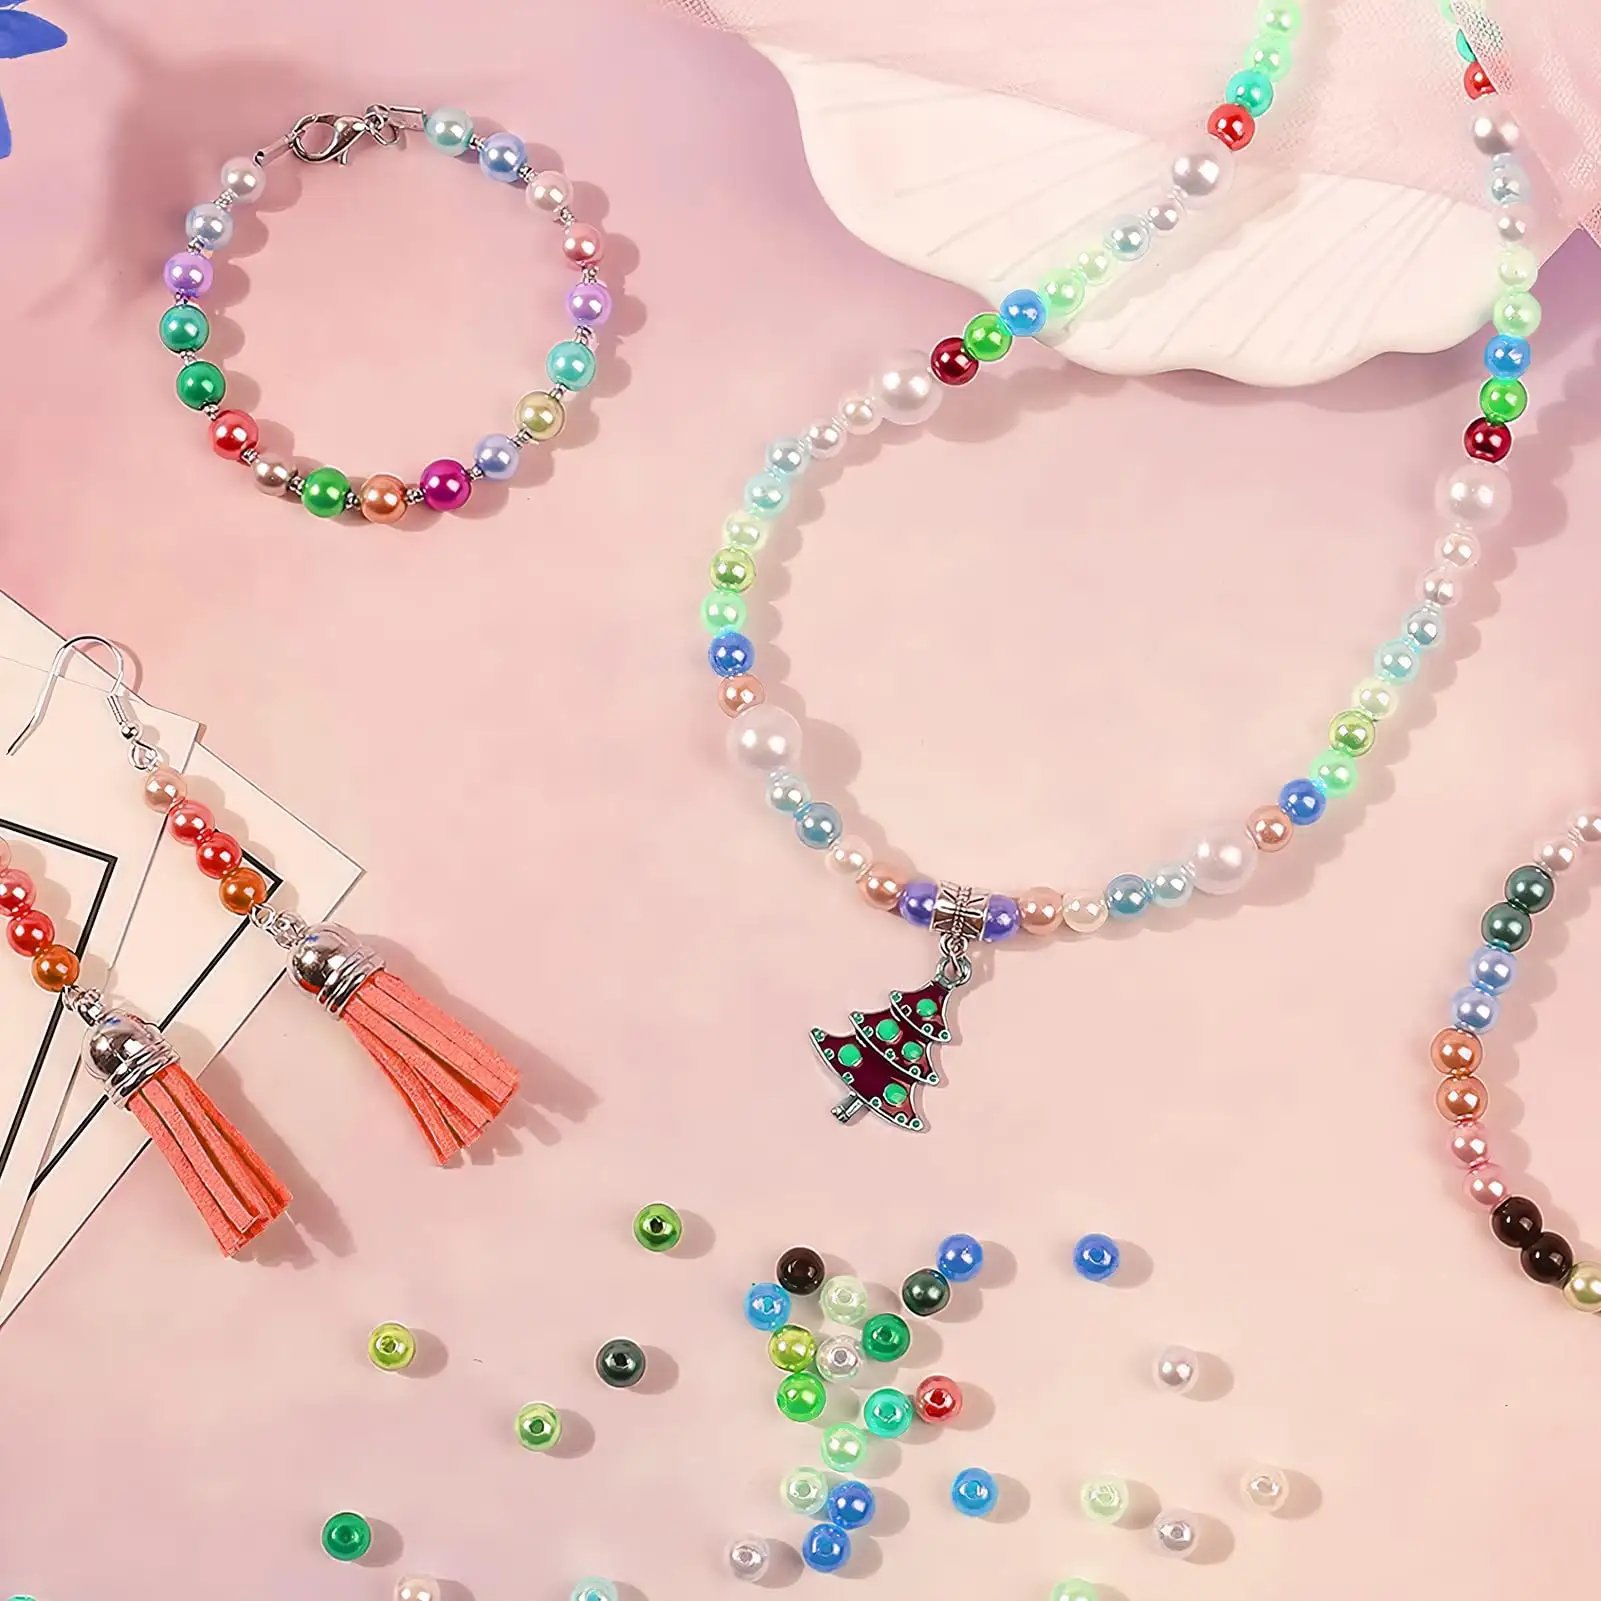 Toowl özel 1960 adet 28 renkler mücevherat yapma bilezik kolye küpe DIY inci kız hediyeler kiti yuvarlak cam tohum 6mm boncuk